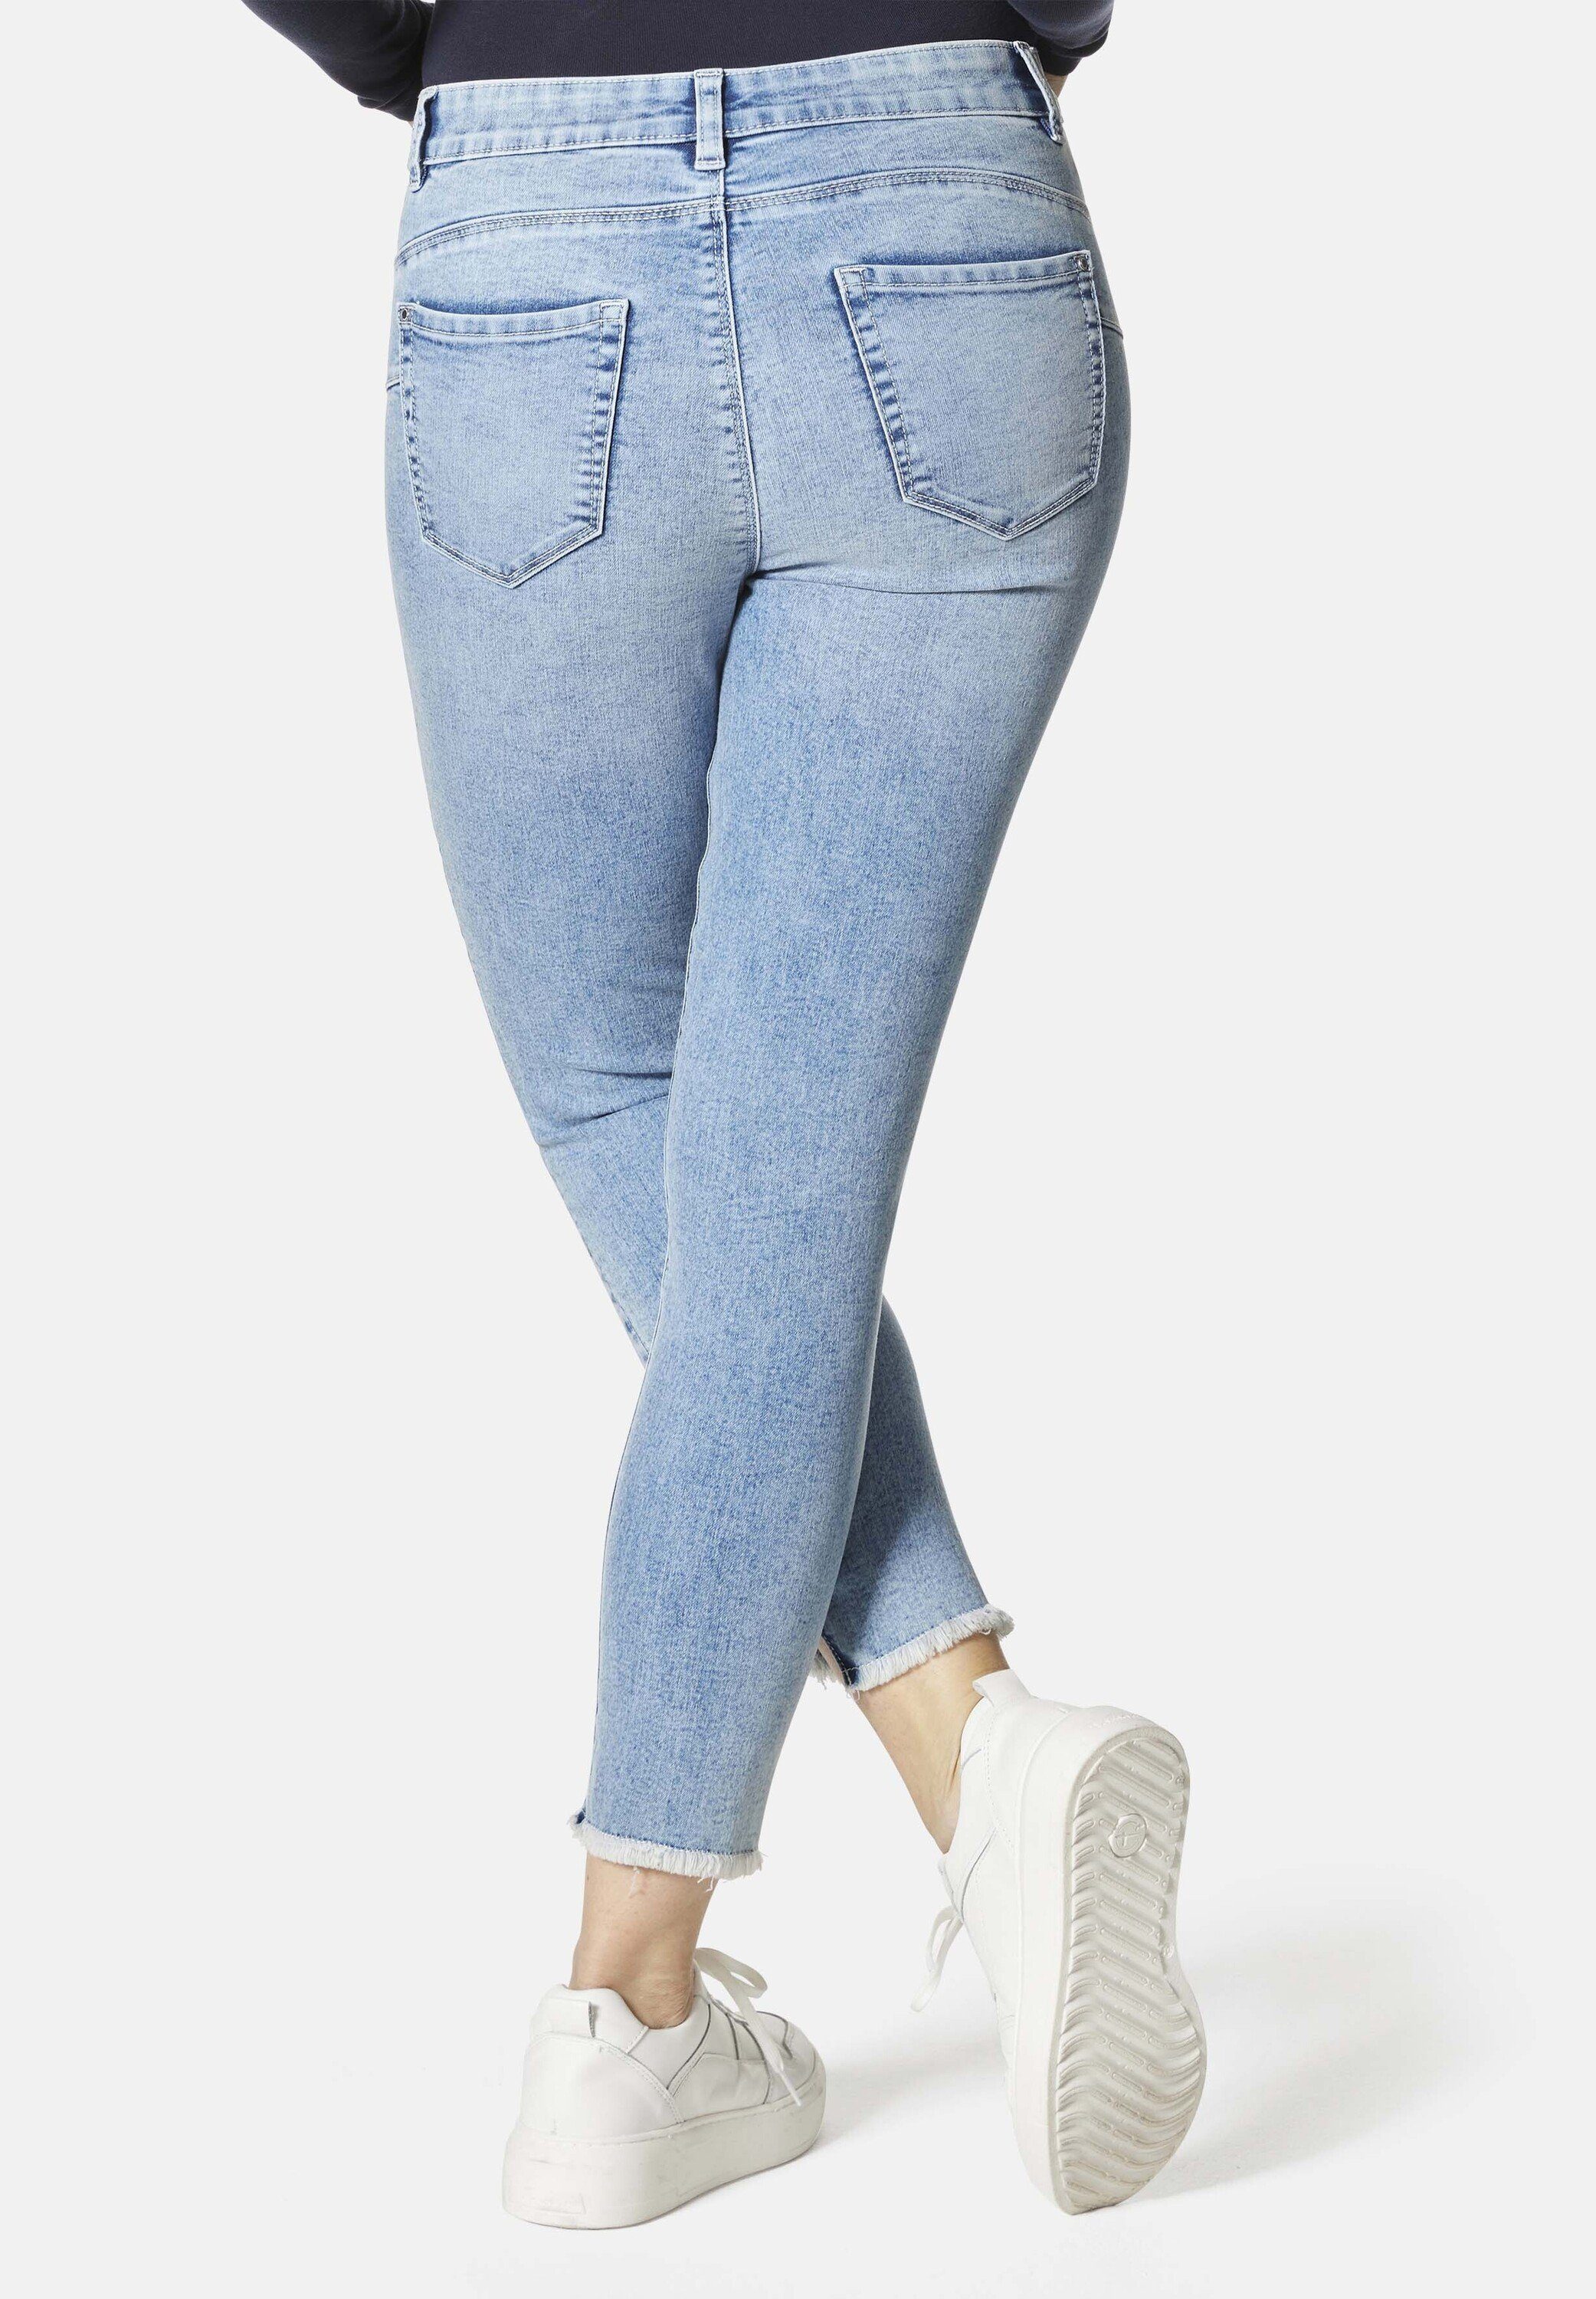 Rio Fringe STOOKER Fit 5-Pocket-Jeans Skinny WOMEN